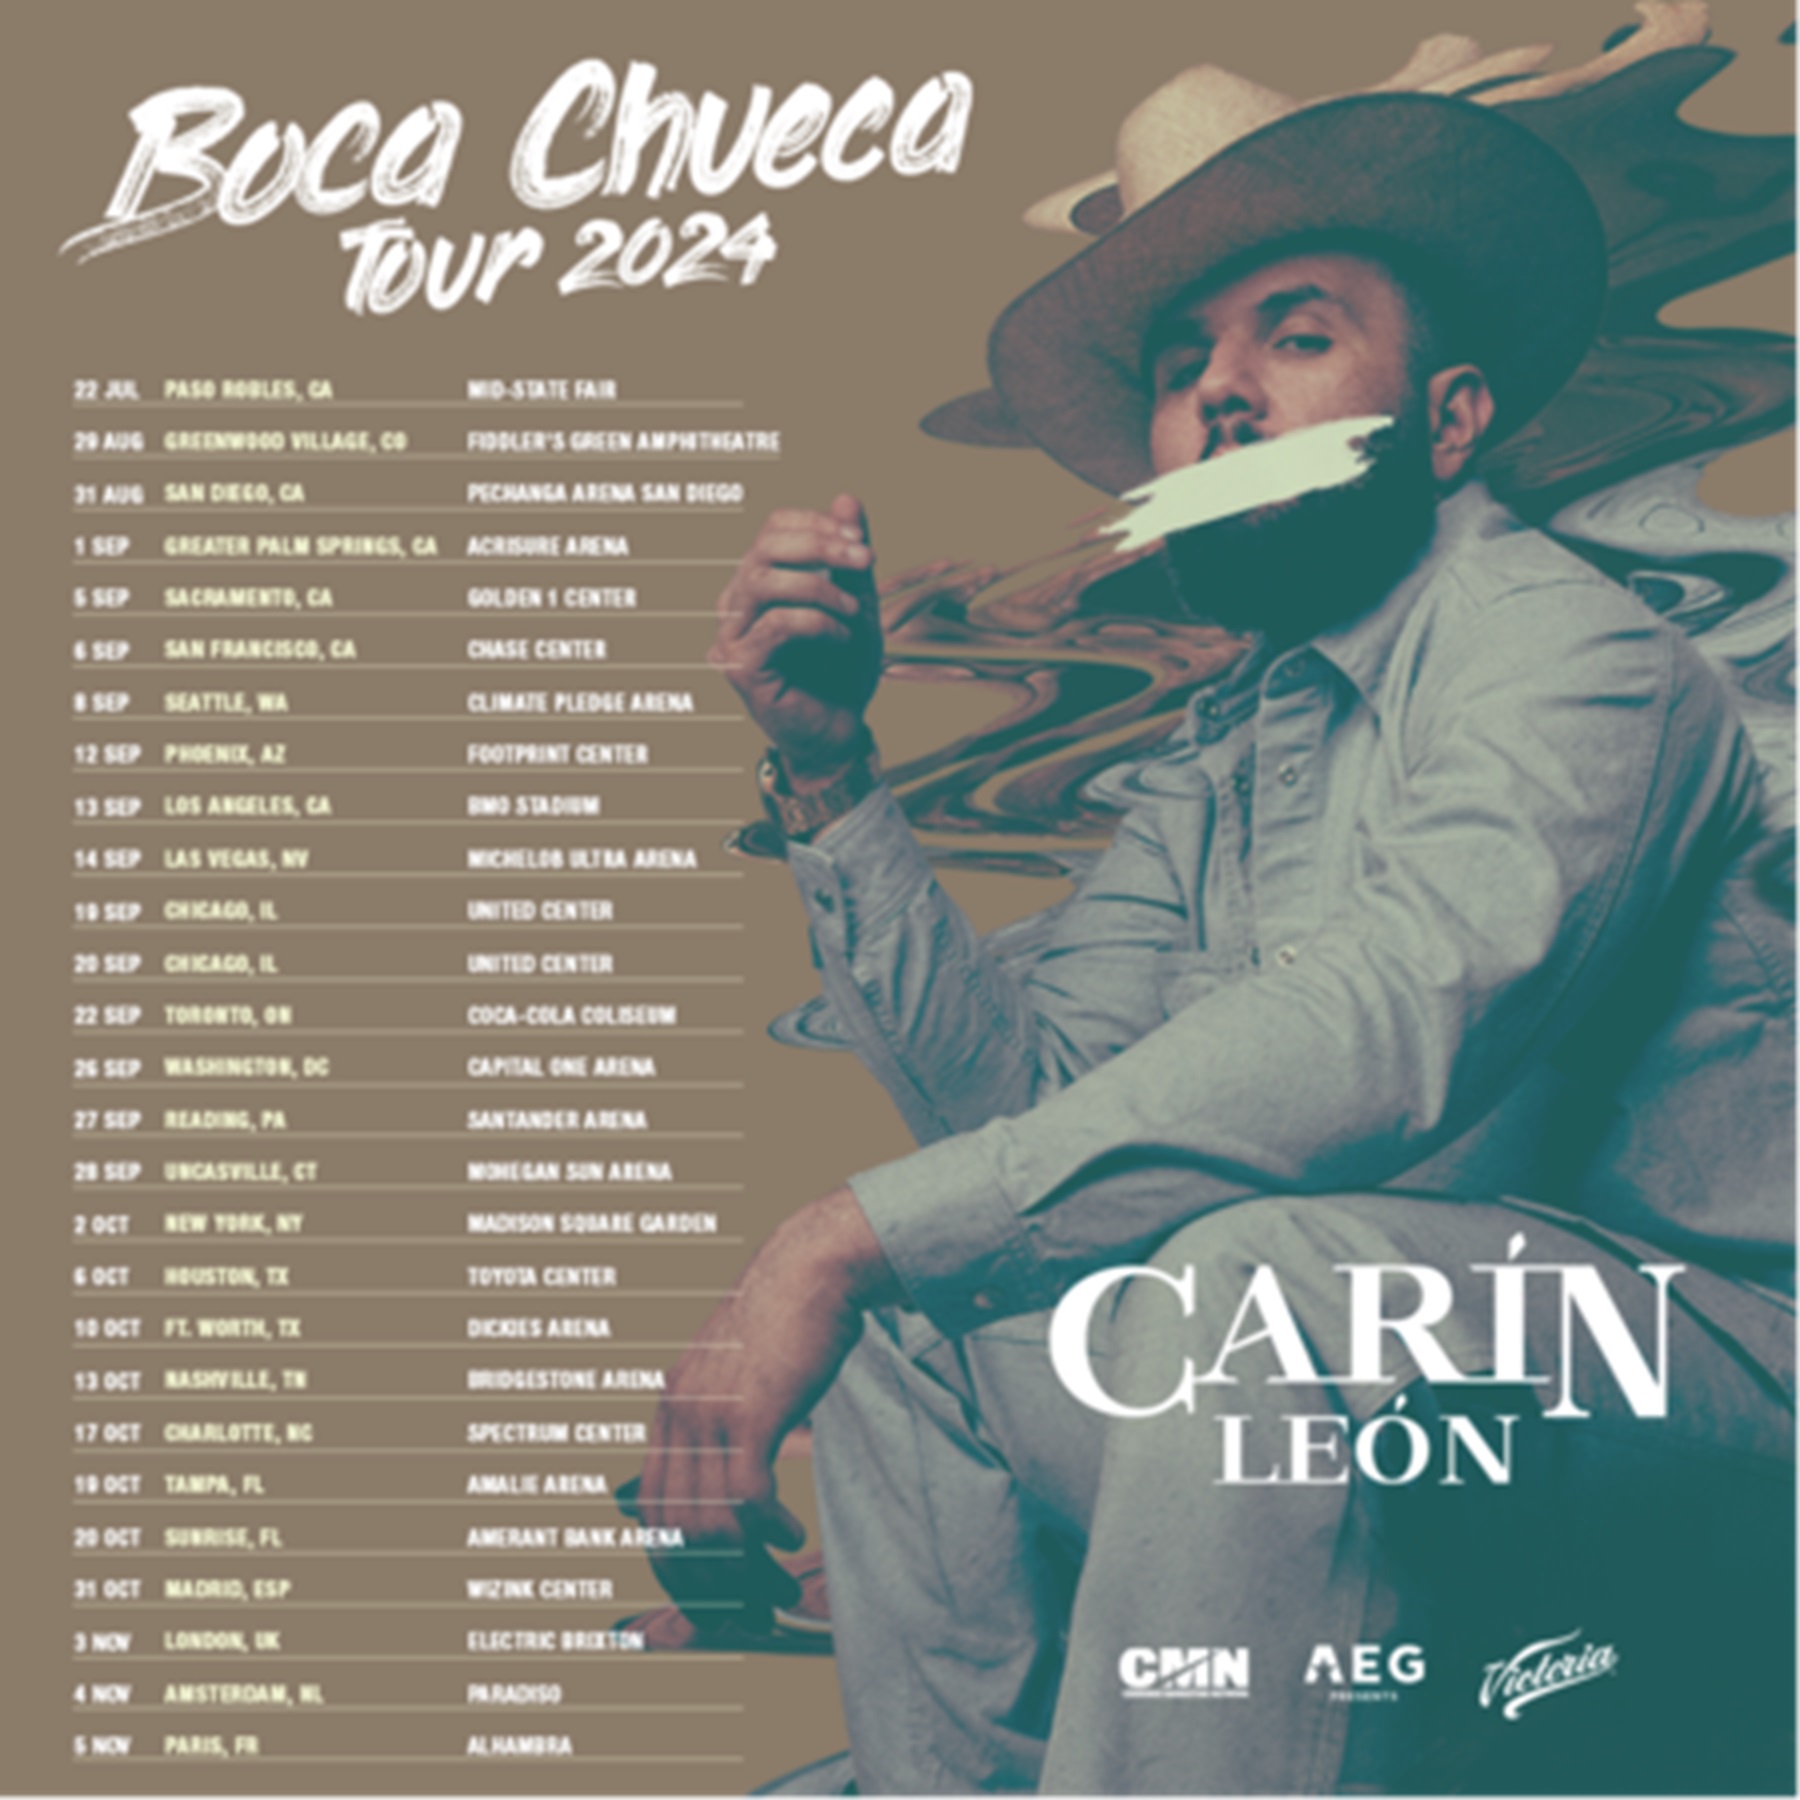 Carin León confirms North American Arena dates || Boca Chueca Tour 2024